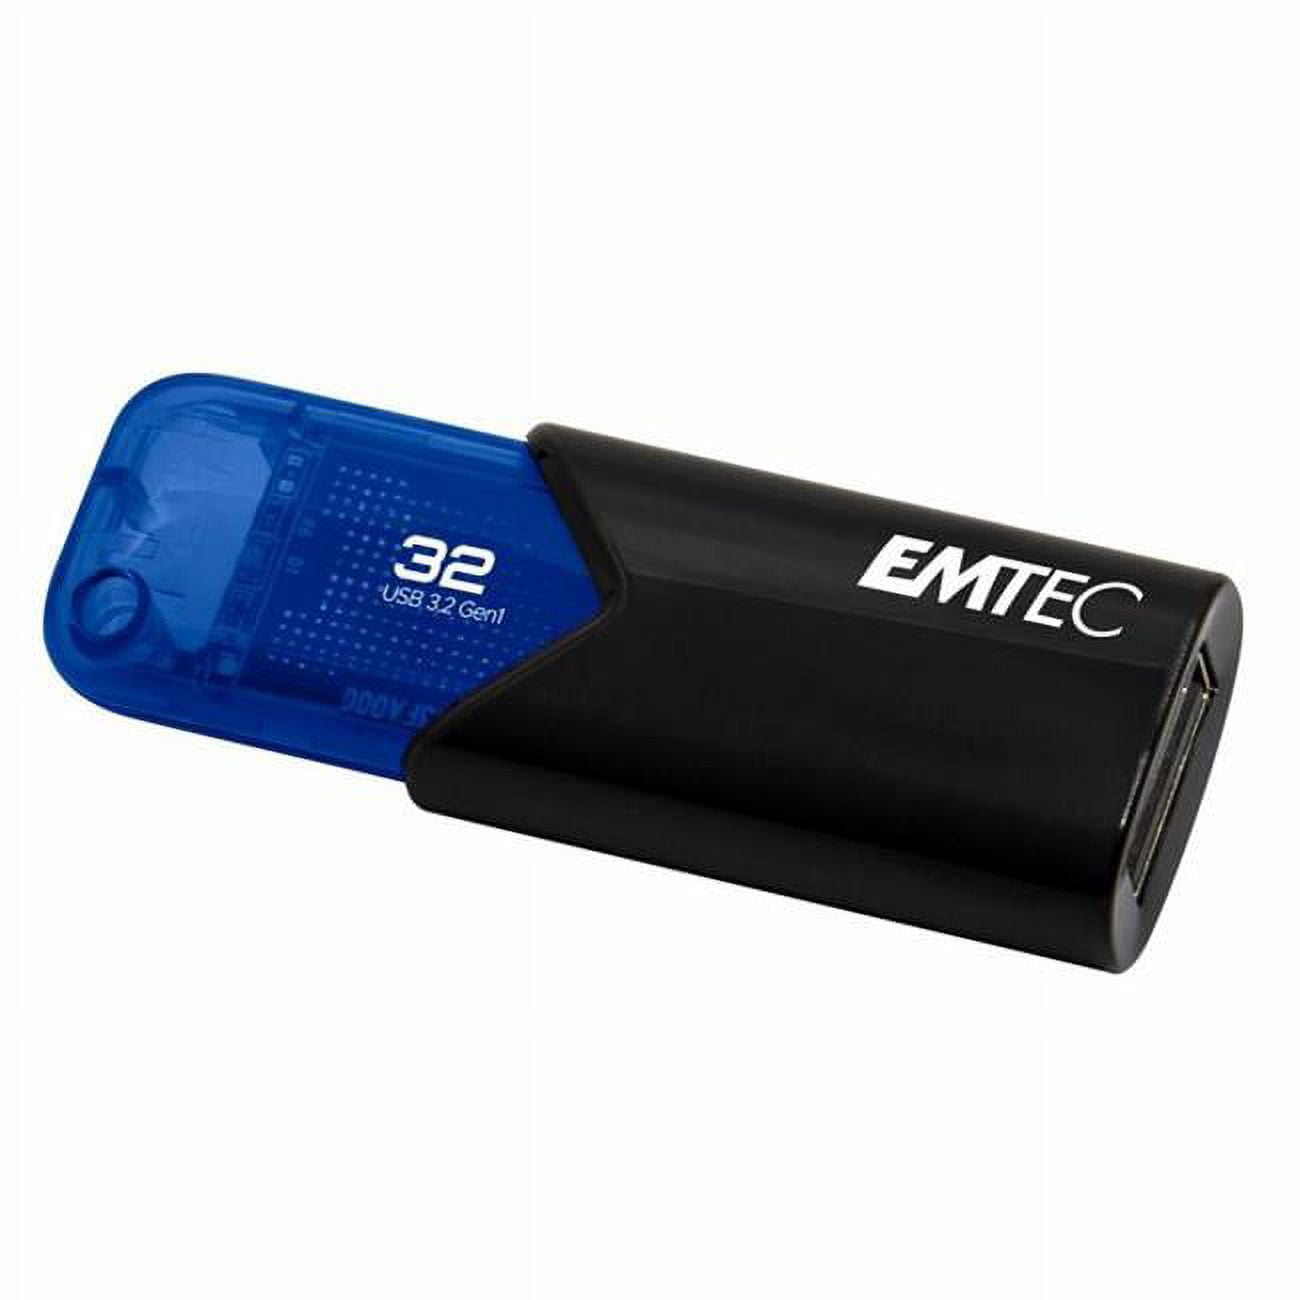 Picture of Emtec ECMMD32GB113 3.1 B113 Click Easy 32GB USB